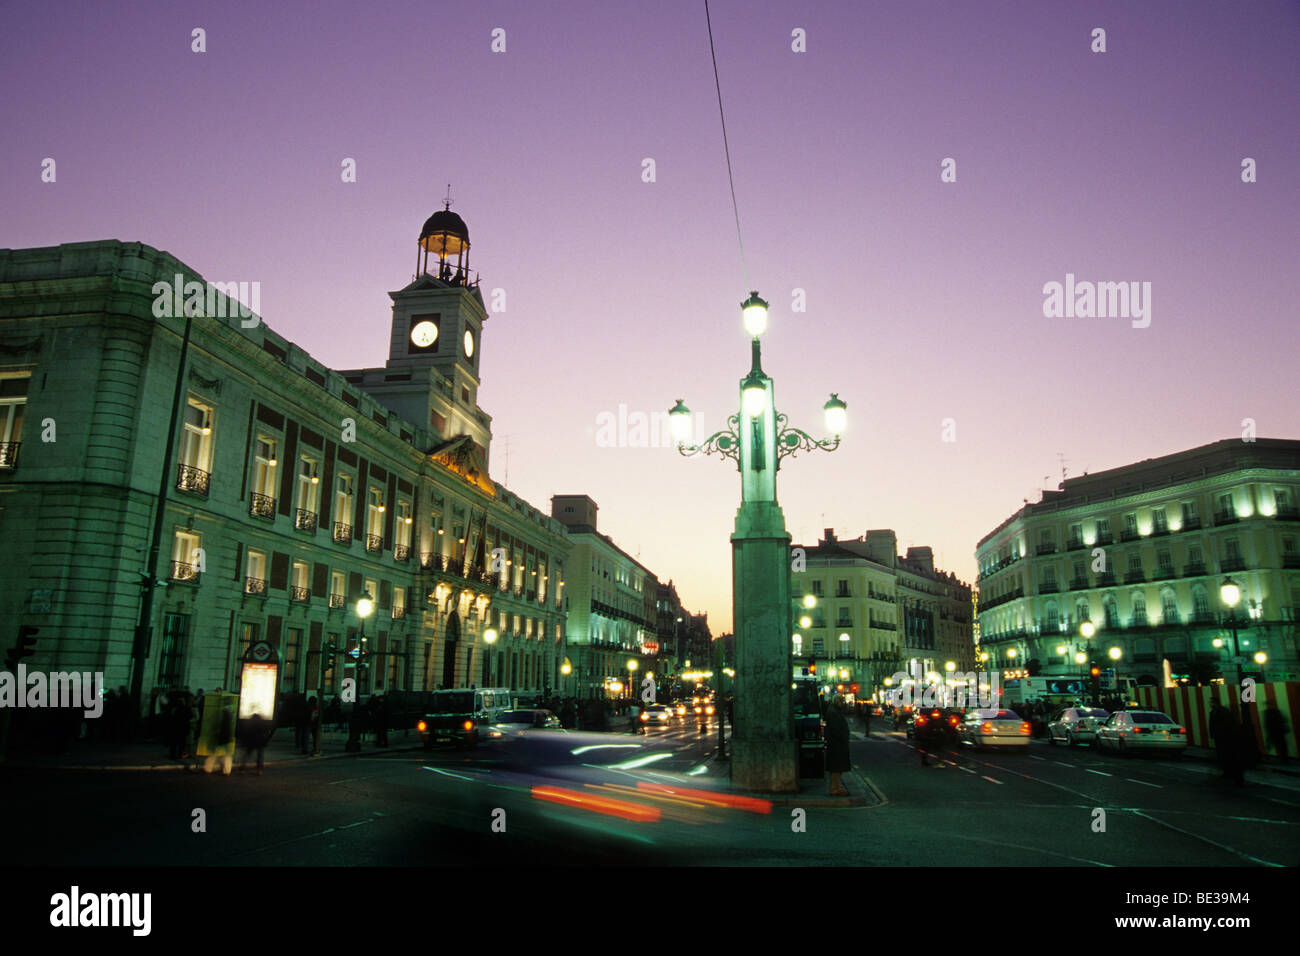 Regierungsgebäude, Real Casa de Correos und eine Straßenlaterne auf dem Hauptplatz Plaza Puerta del Sol am Abend Madr Stockfoto